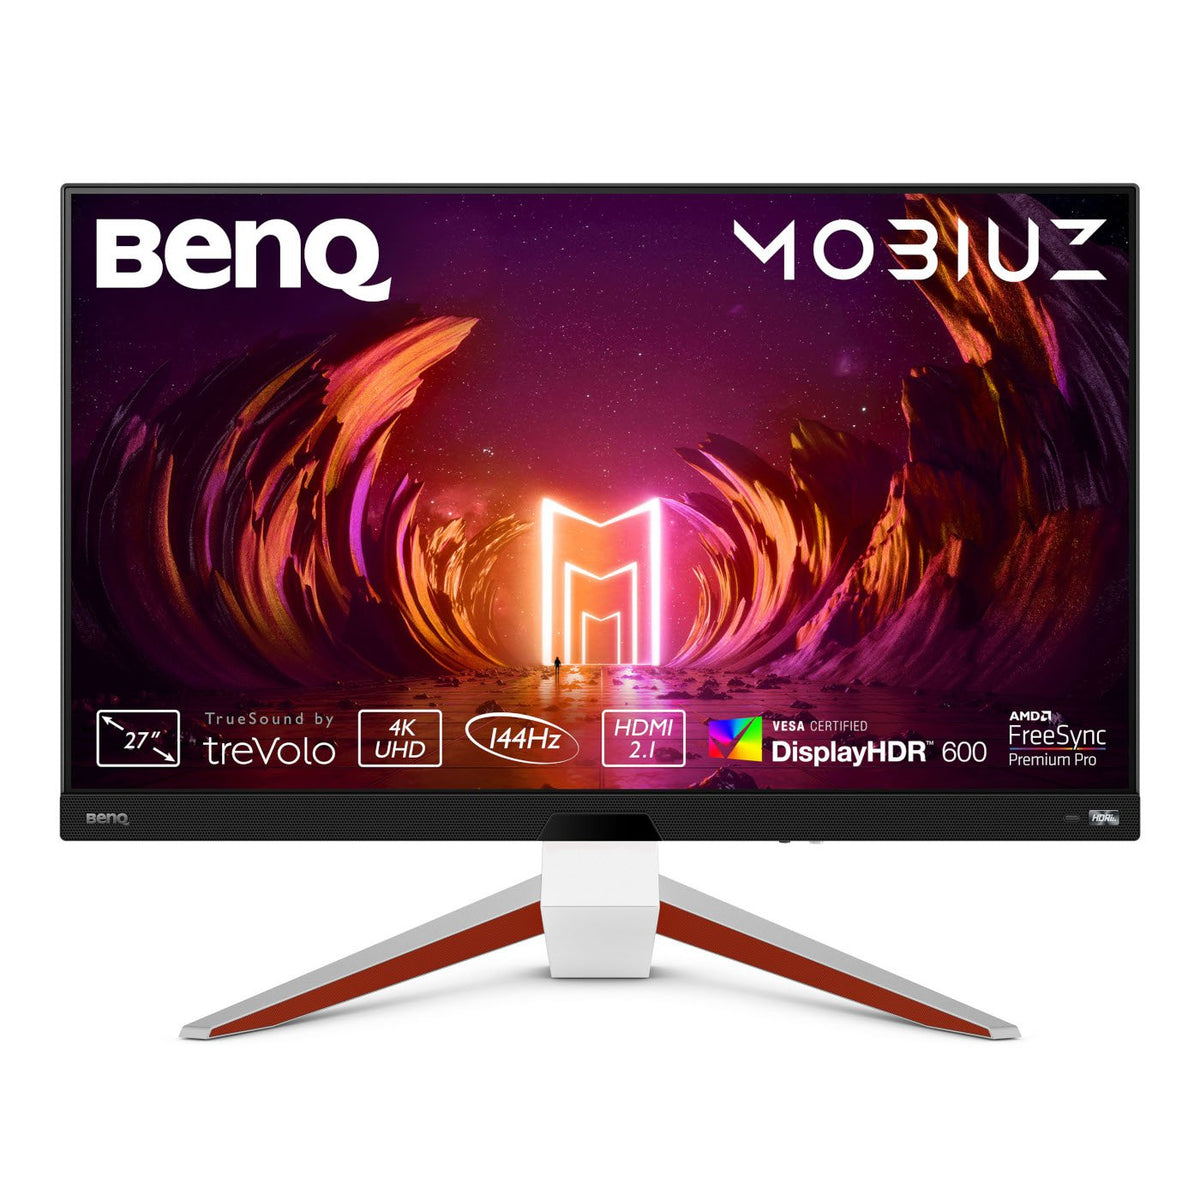 BenQ Mobiuz EX2710U - LCD Monitor - 27" - 3840 x 2160 4K @ 144 Hz - IPS - 600 cd/m² - 1000:1 - DisplayHDR 600 - 1 ms - 2xHDMI, DisplayPort - speakers with subwoofer